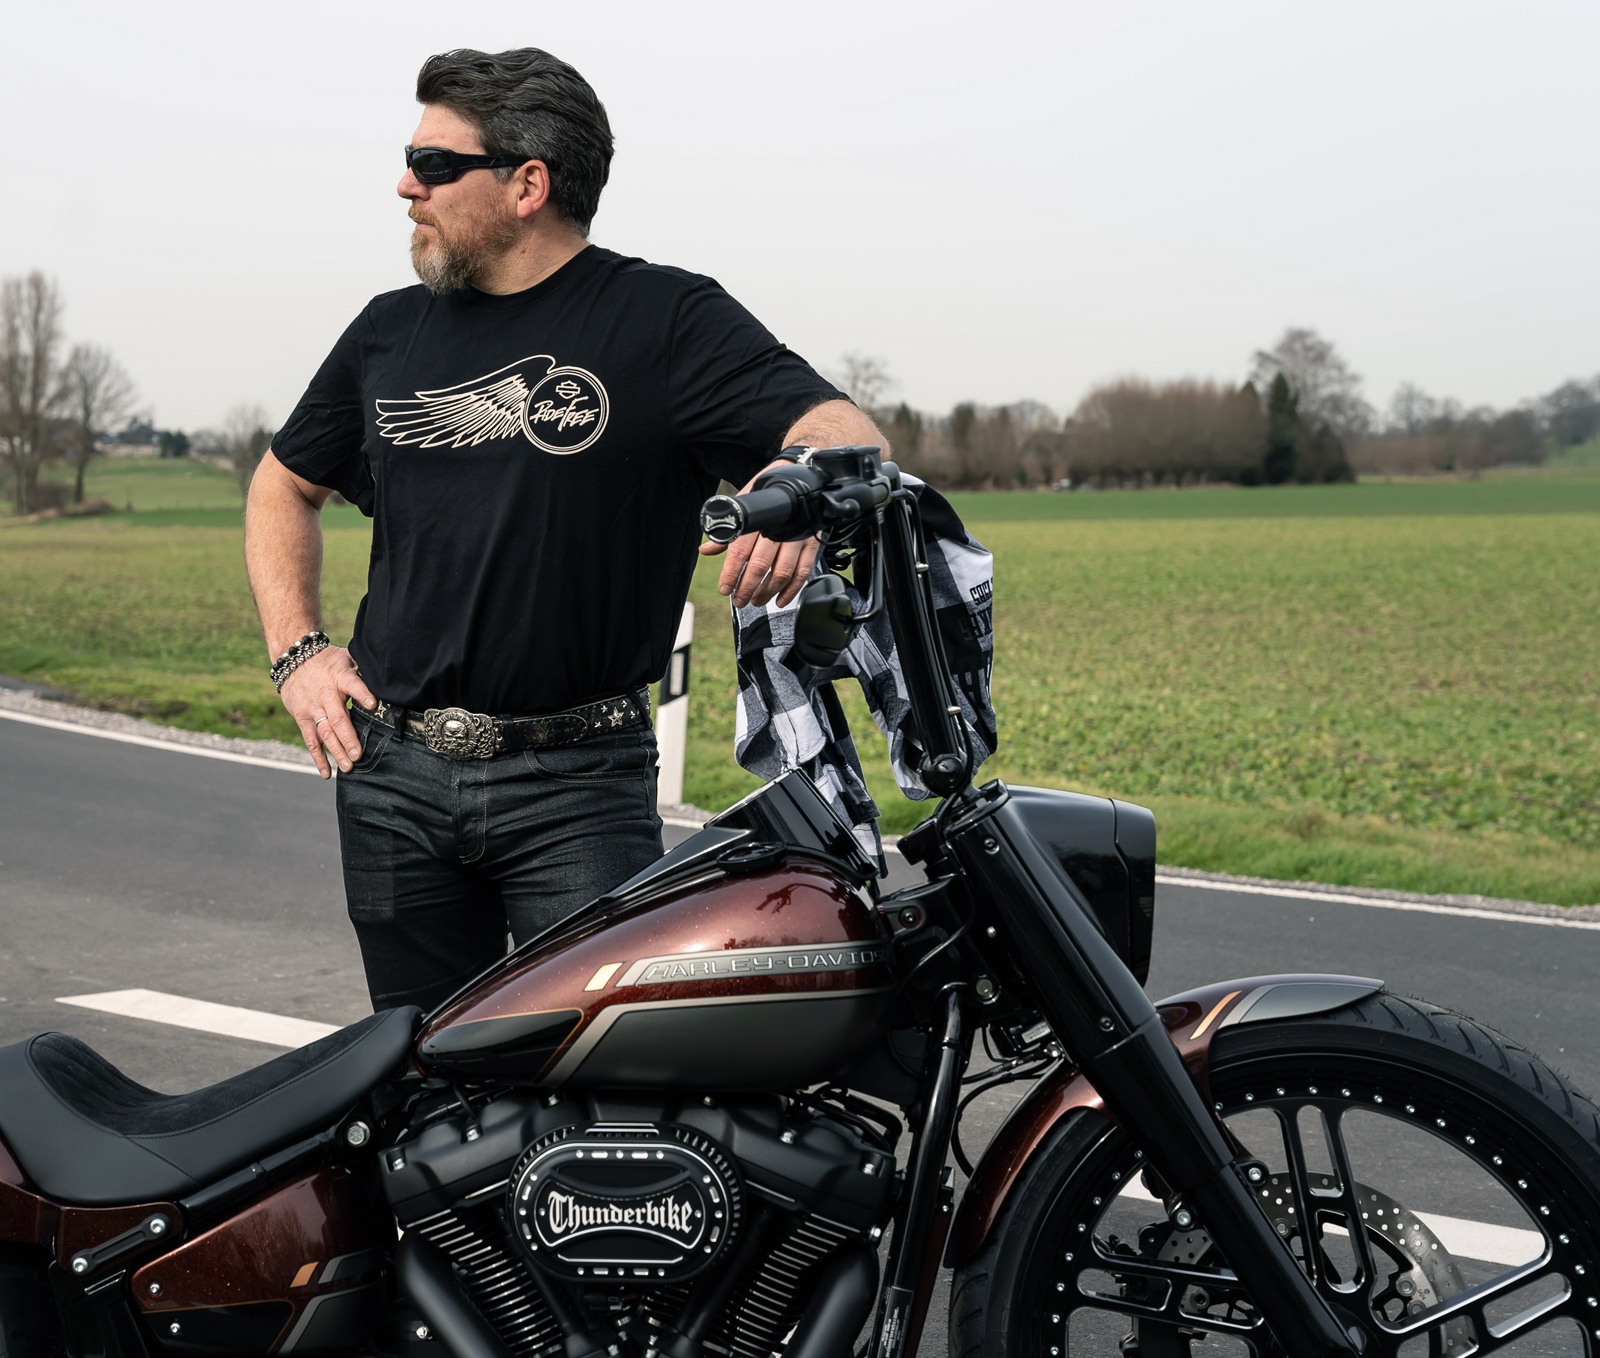 99024 20vm Harley Davidson T Shirt Ride Free Black At Thunderbike Shop